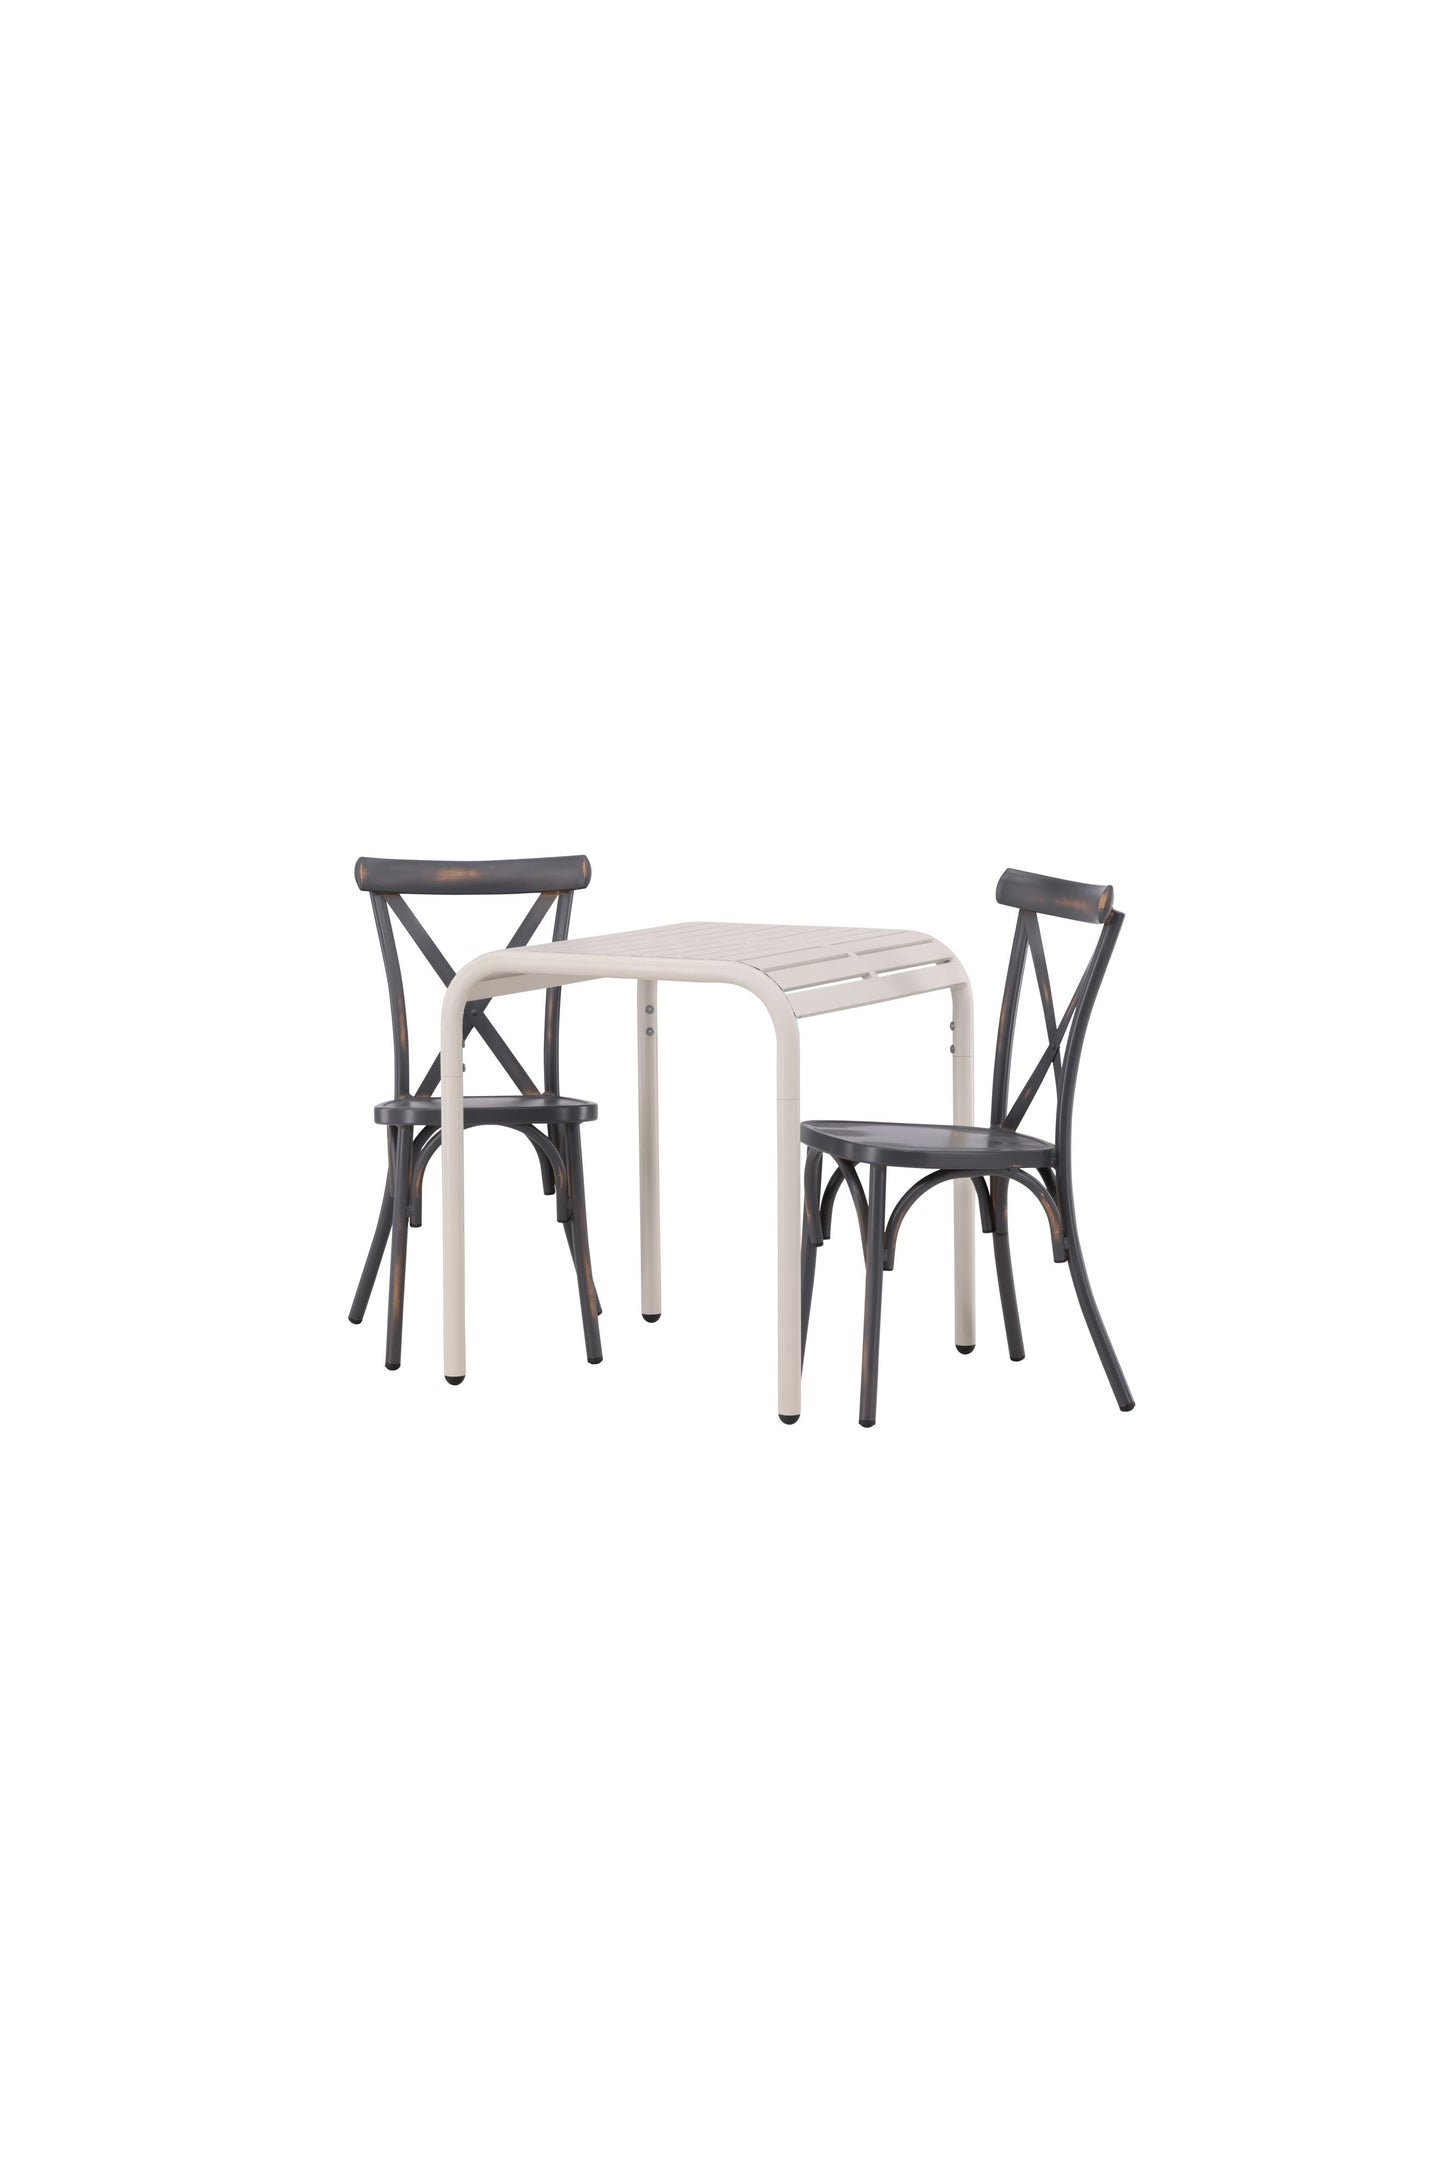 Borneo - Cafébord, Aluminium - Beige / Kvadrat 70*70* + Tablas stol Aluminium - Sort